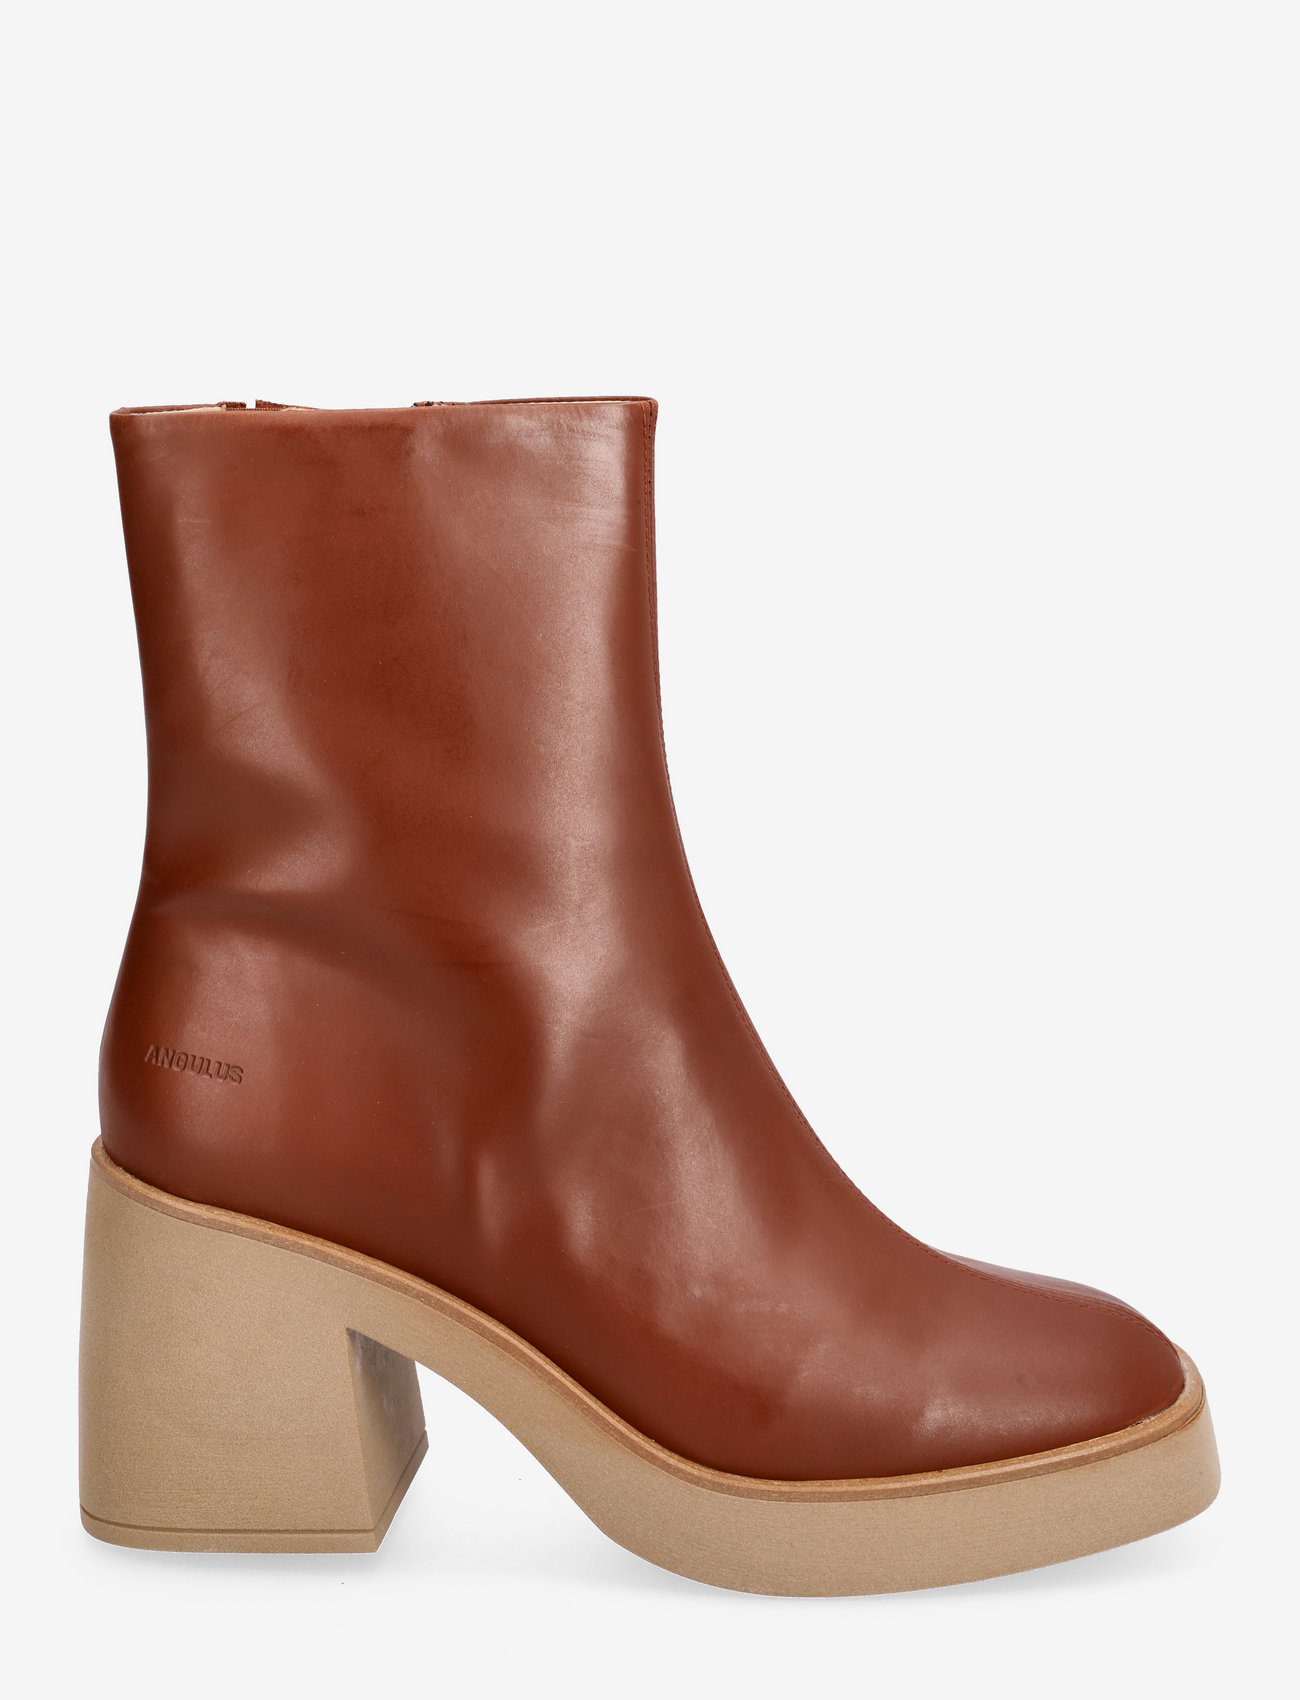 ANGULUS - Bootie - block heel - with zippe - high heel - 1705/036 terracotta - 1